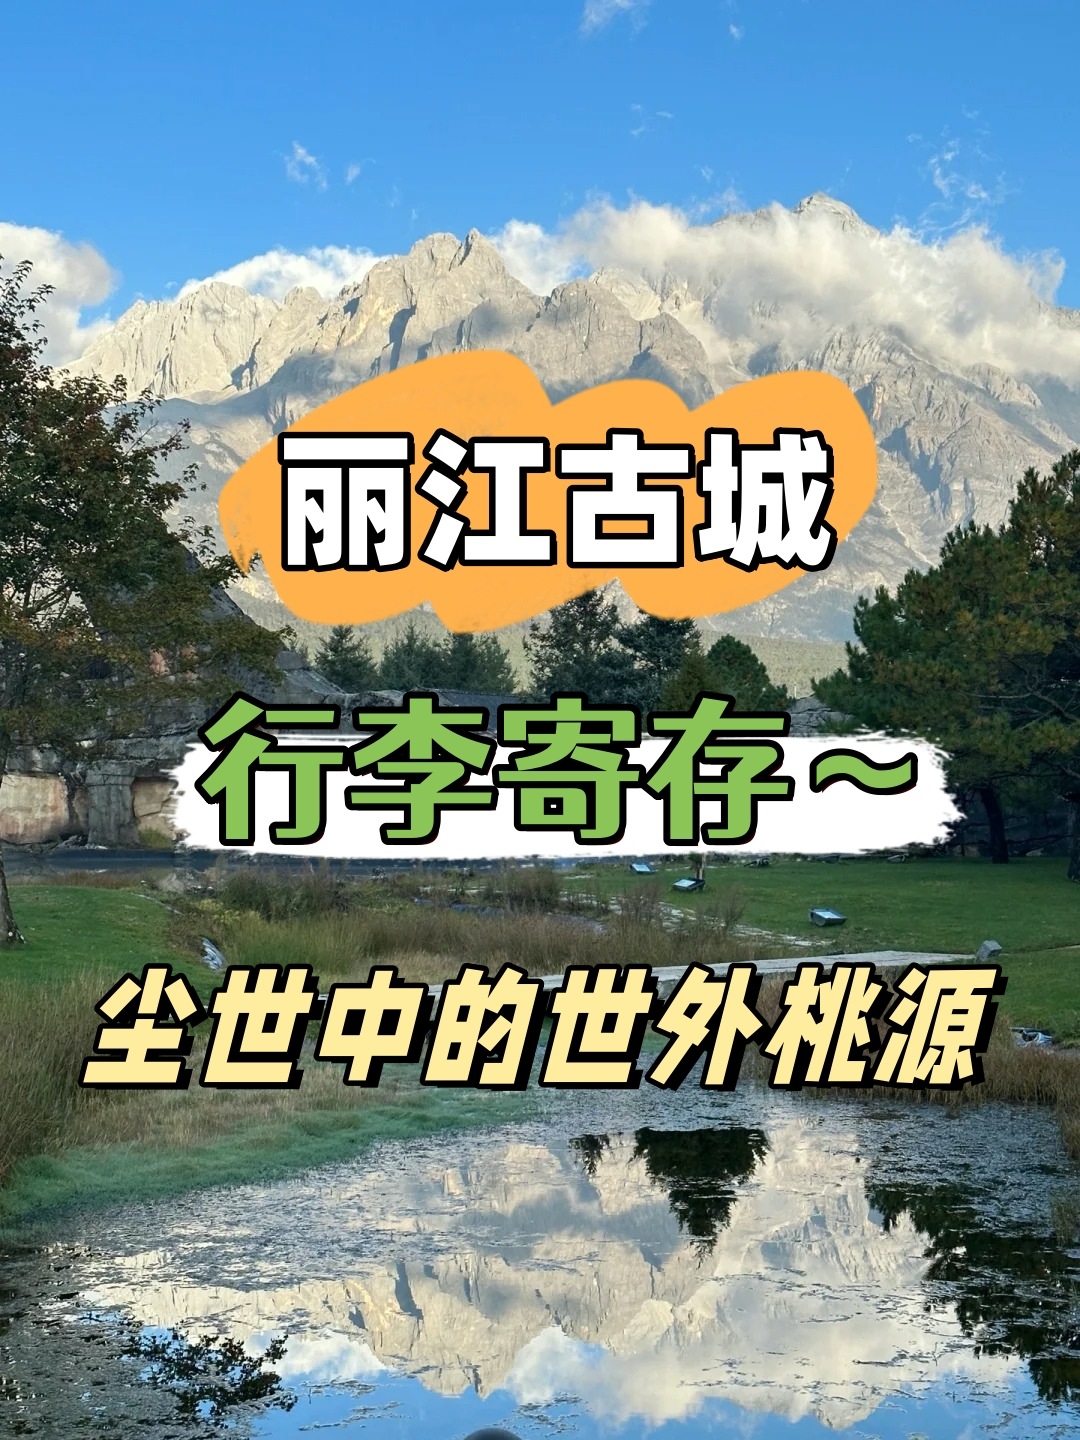 丽江行李寄存攻略丨丽江旅游攻略 5元/天